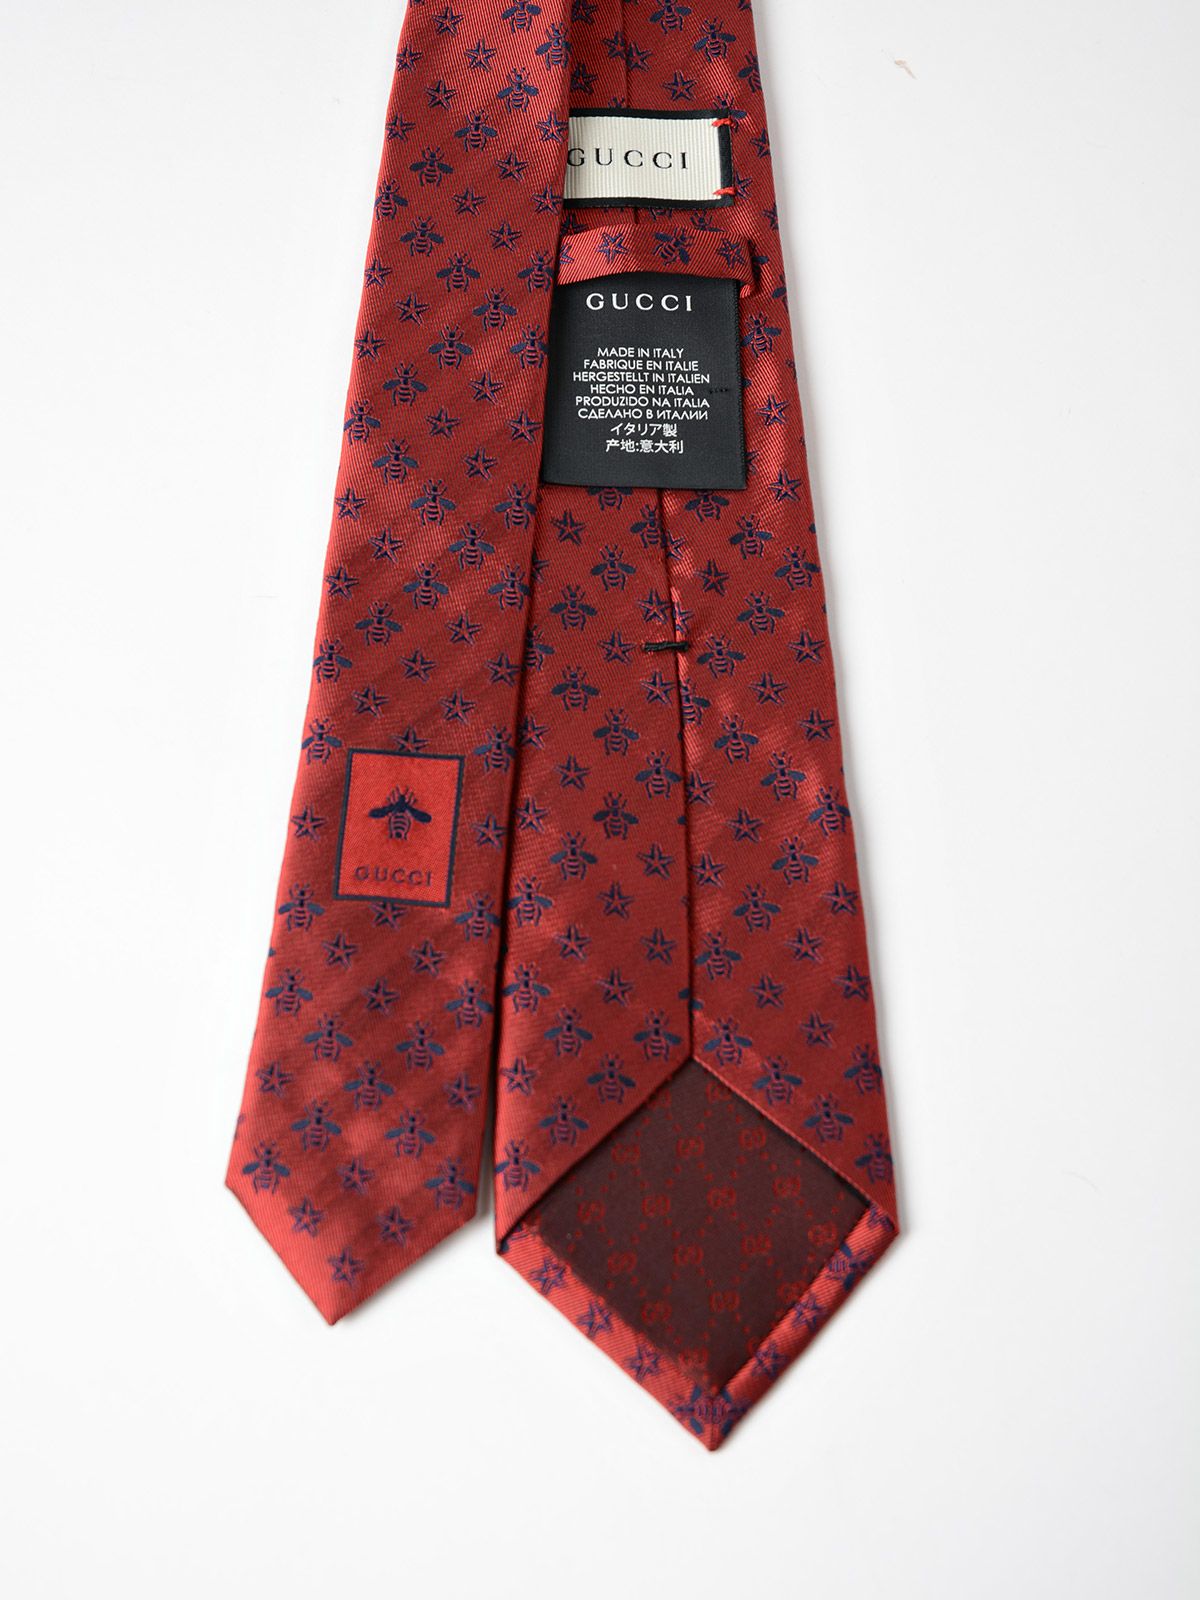 Gucci - Gucci Regular Bee Tie - Red/blue, Men's Ties | Italist